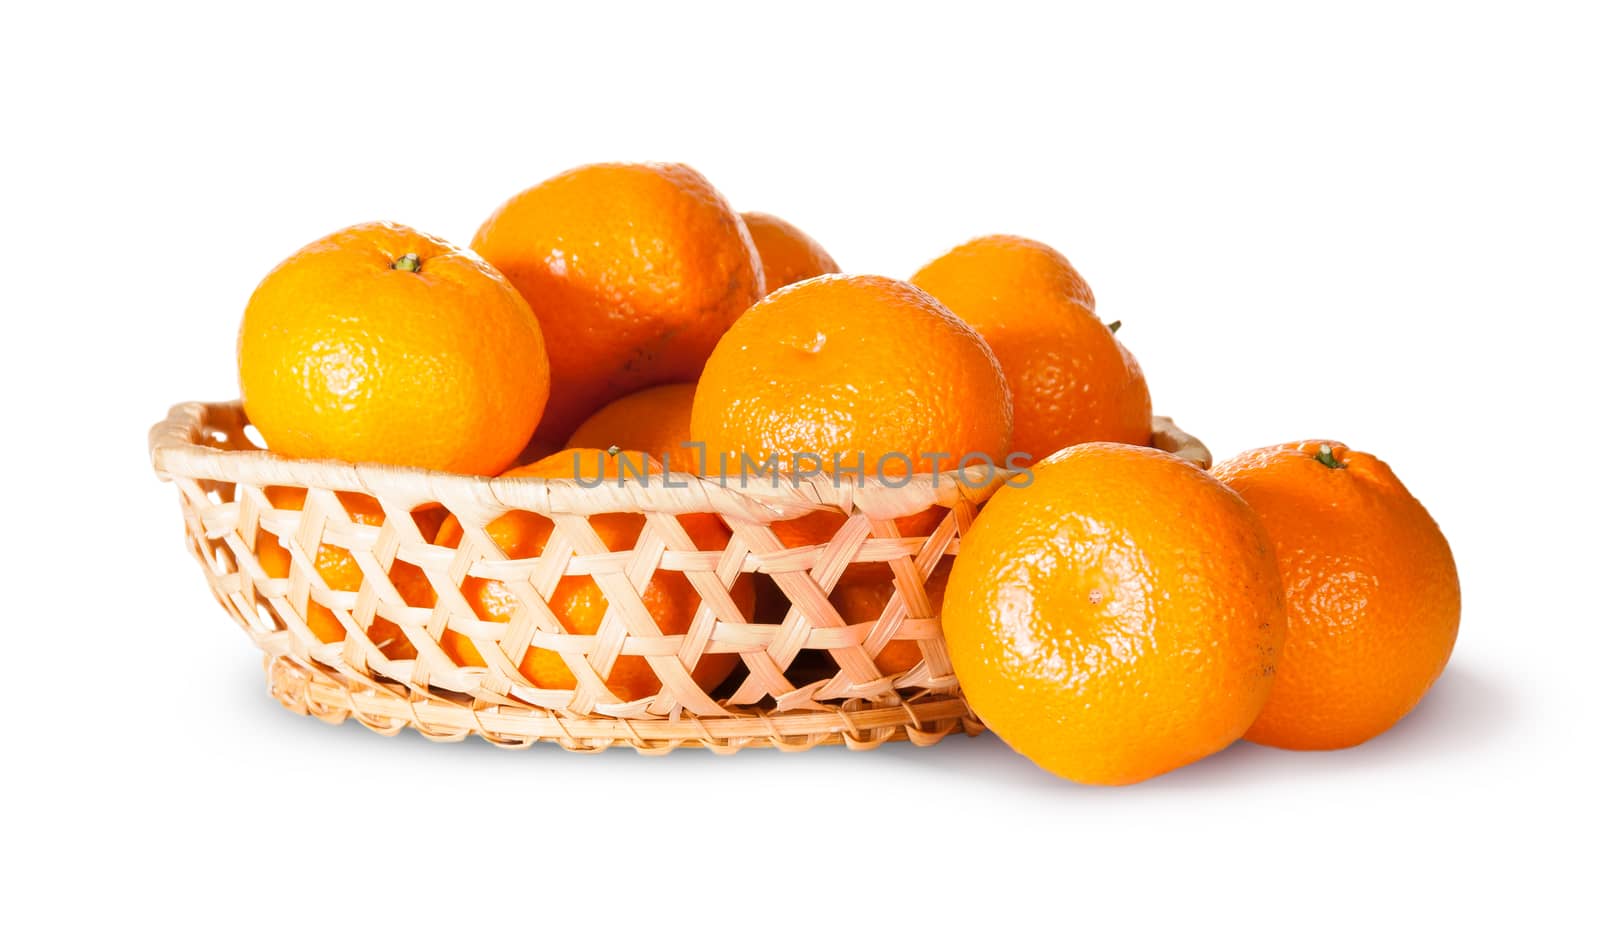 Ripe Sweet Tangerines In Wicker Basket by Cipariss